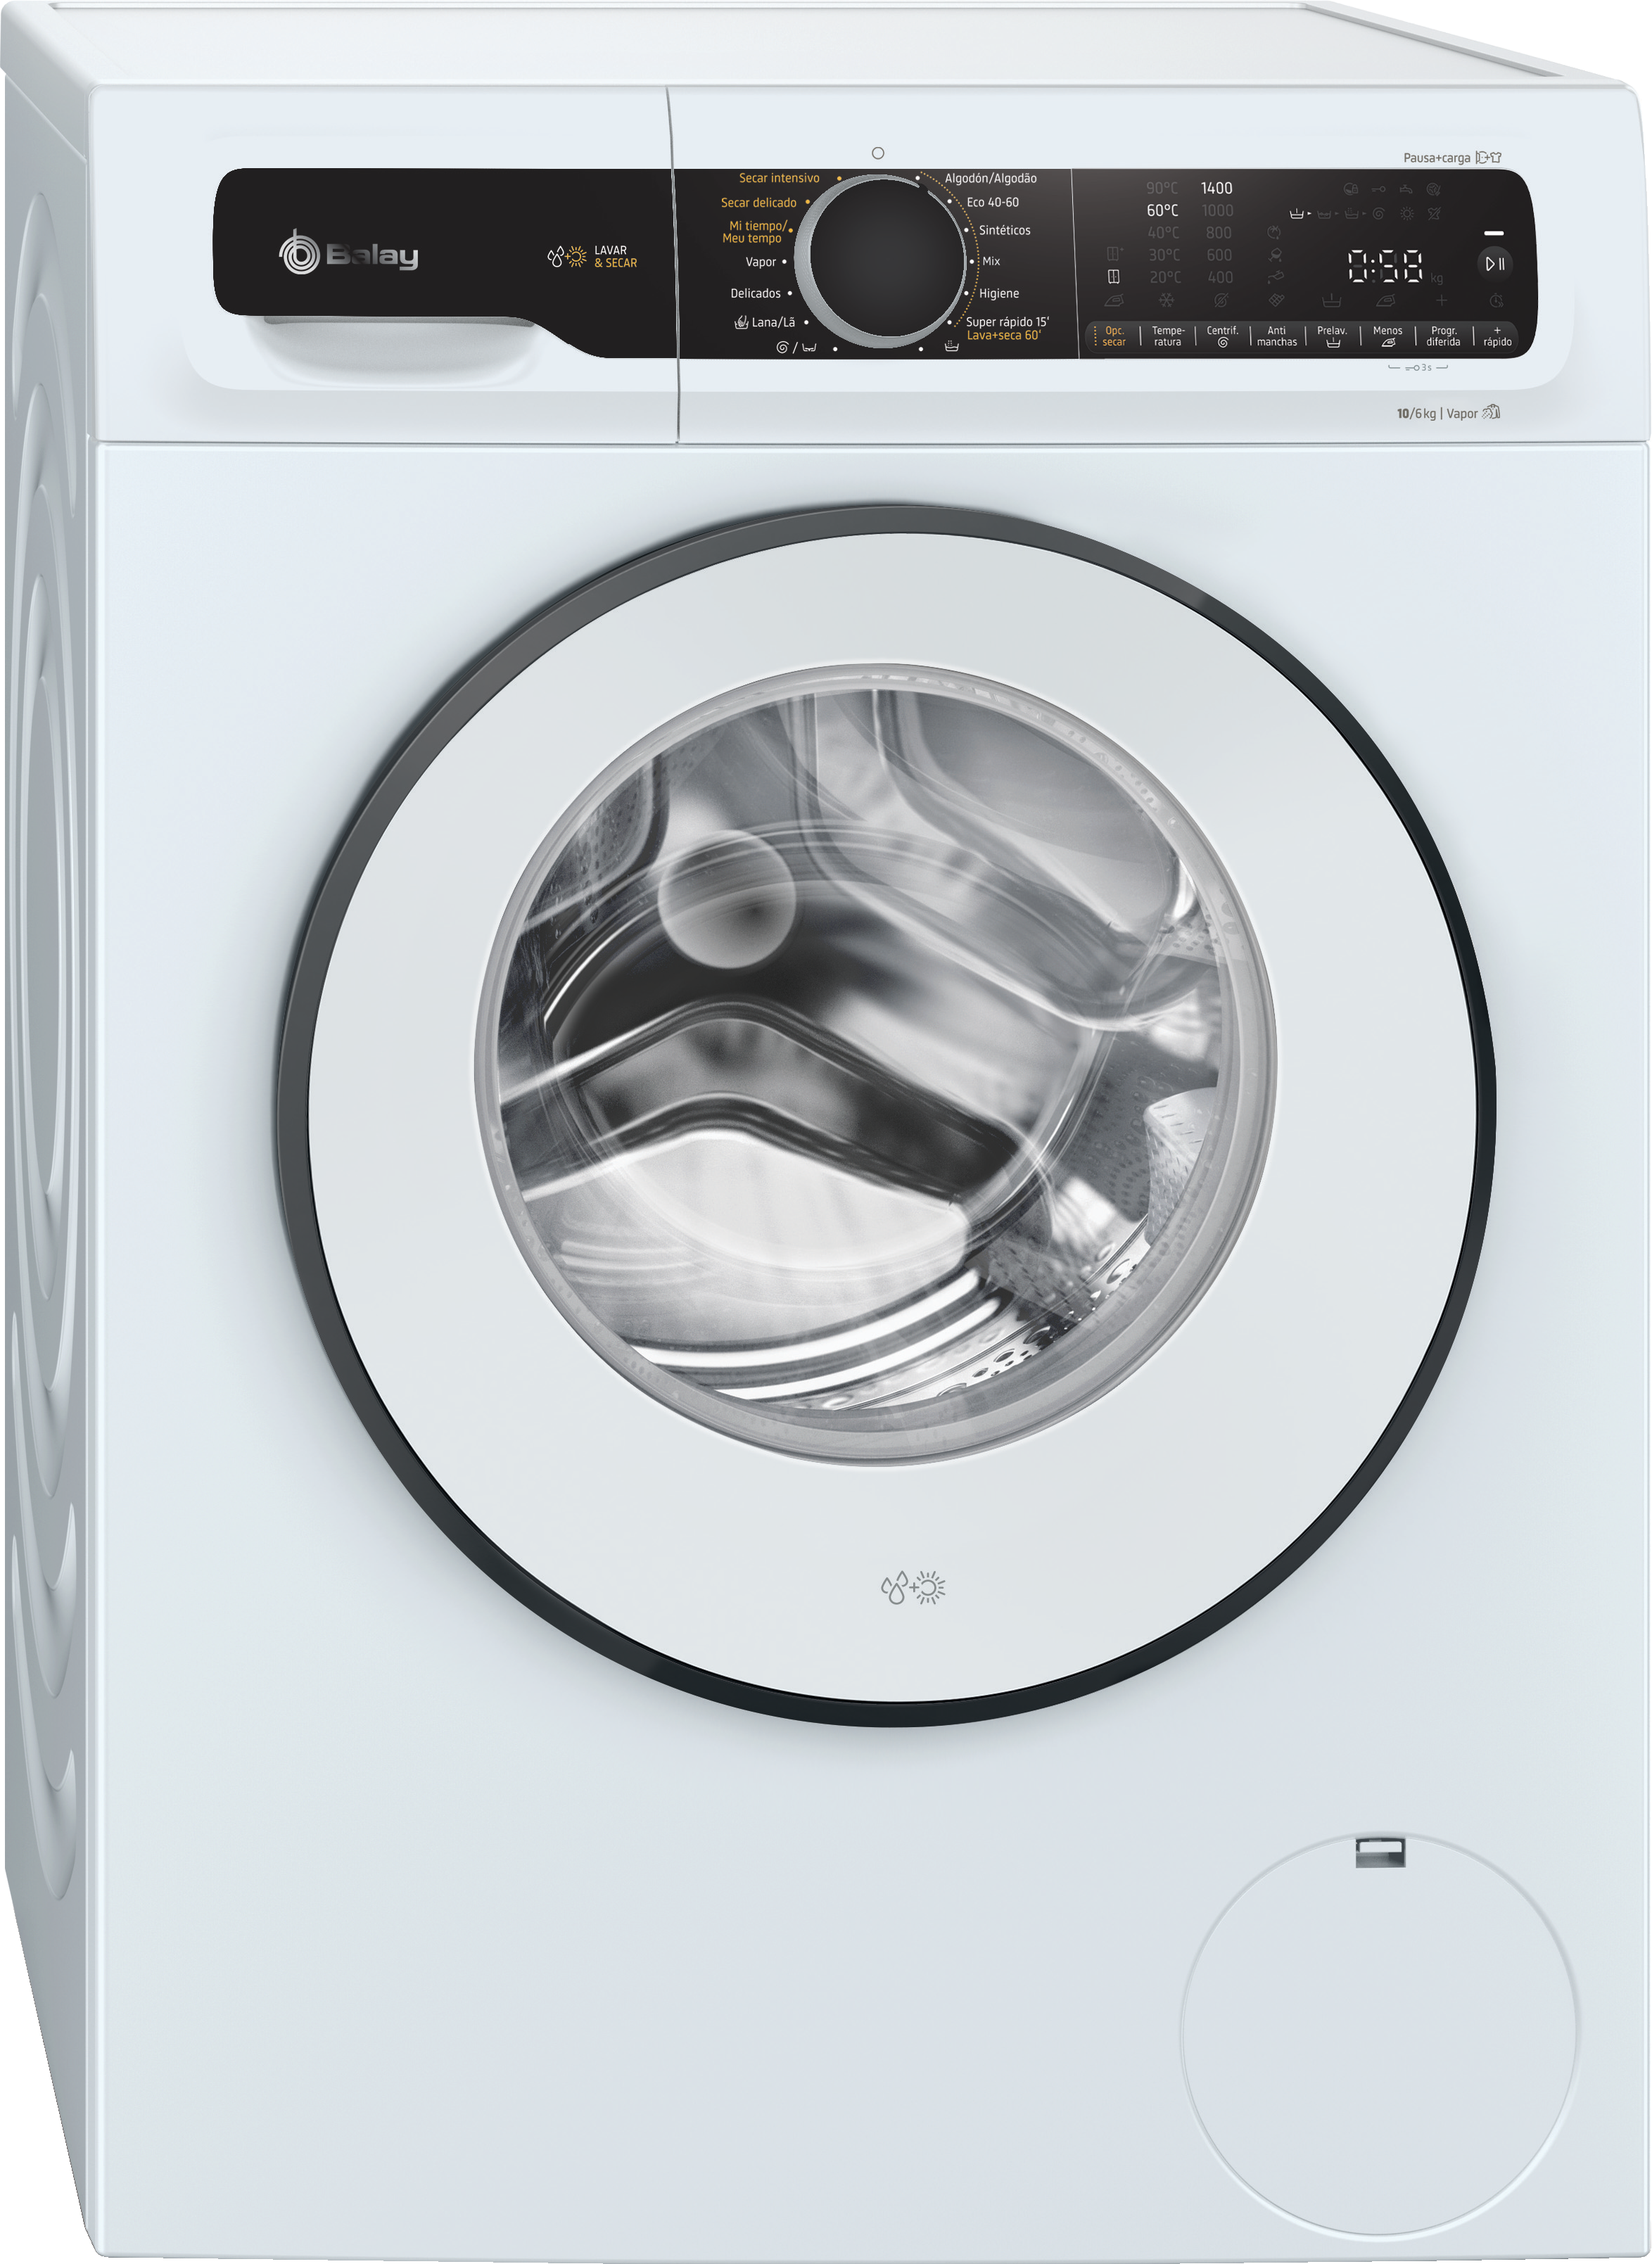 Compra ofertas de Balay 3TW9104B lavadora/secadora carga frontal 1400 rpm  10/